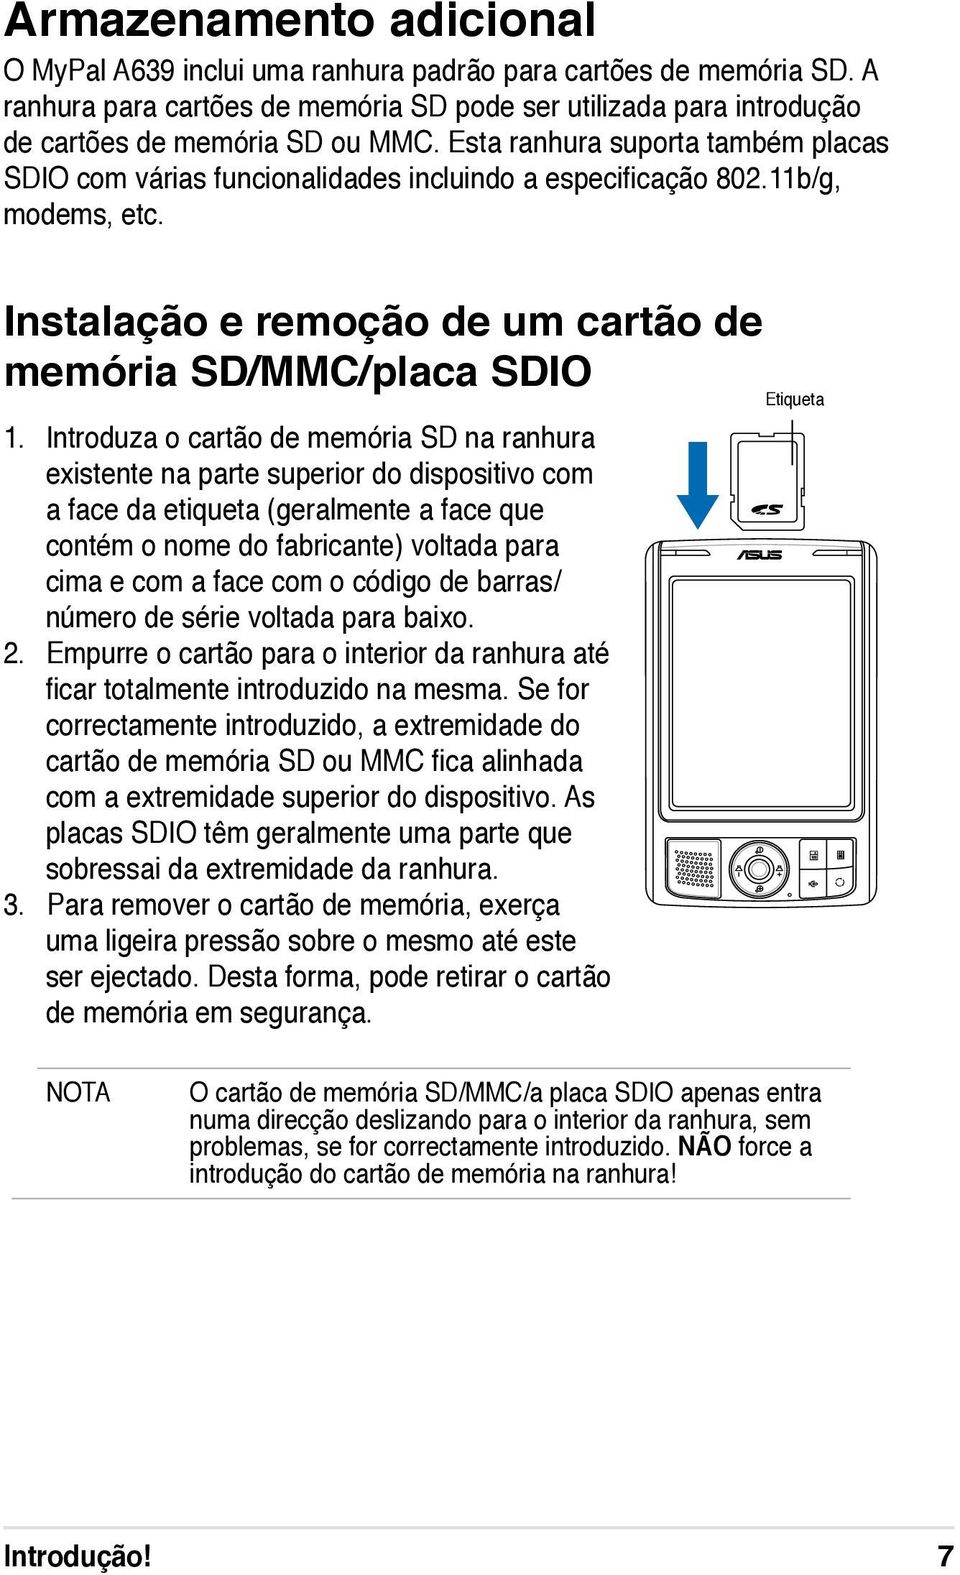 Introduza o cartão de memória SD na ranhura existente na parte superior do dispositivo com a face da etiqueta (geralmente a face que contém o nome do fabricante) voltada para cima e com a face com o